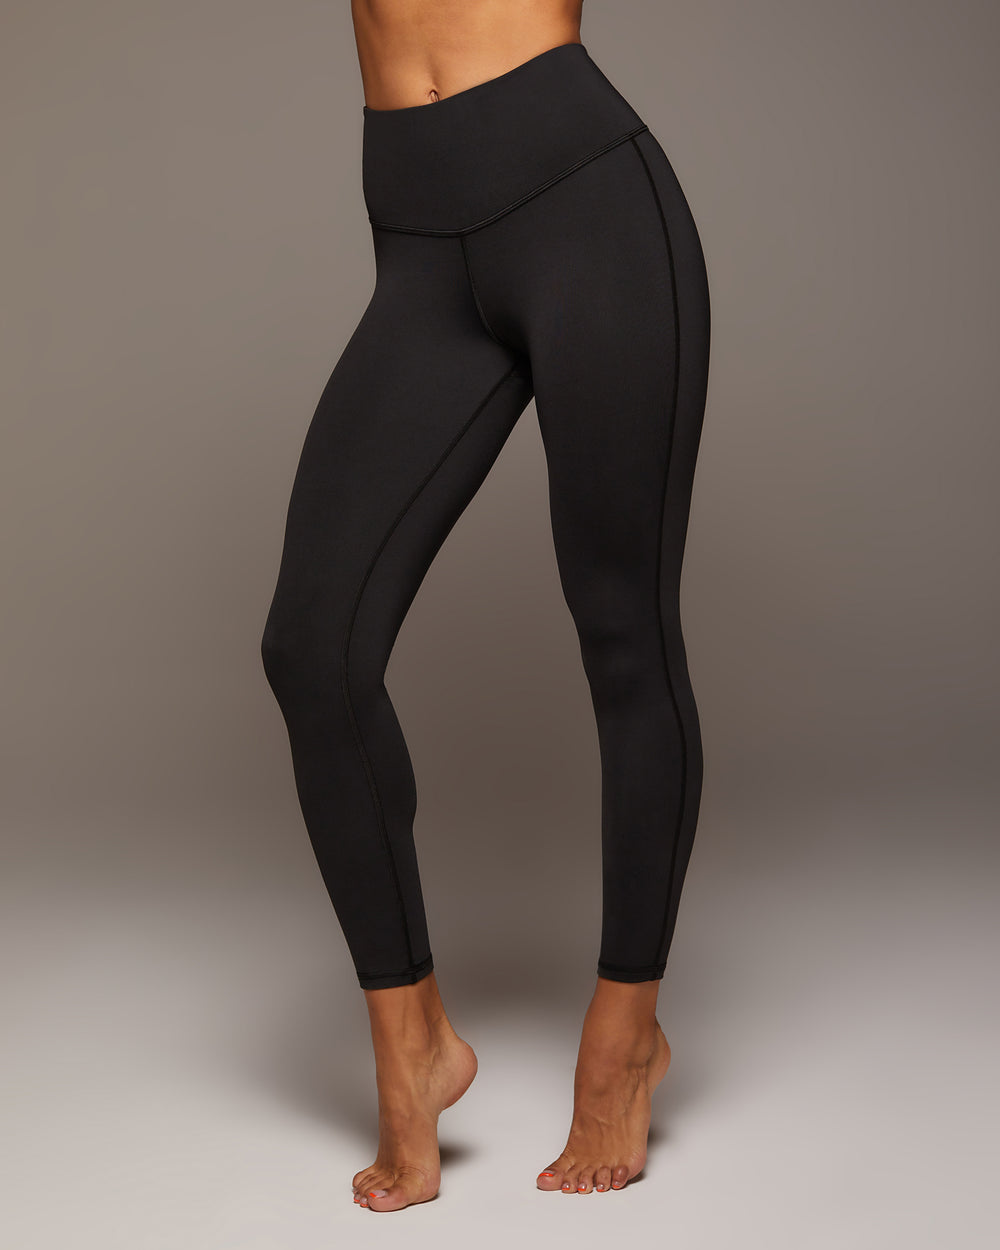 90 Degree By Reflex Women’s Black Activewear Leggings - Size L